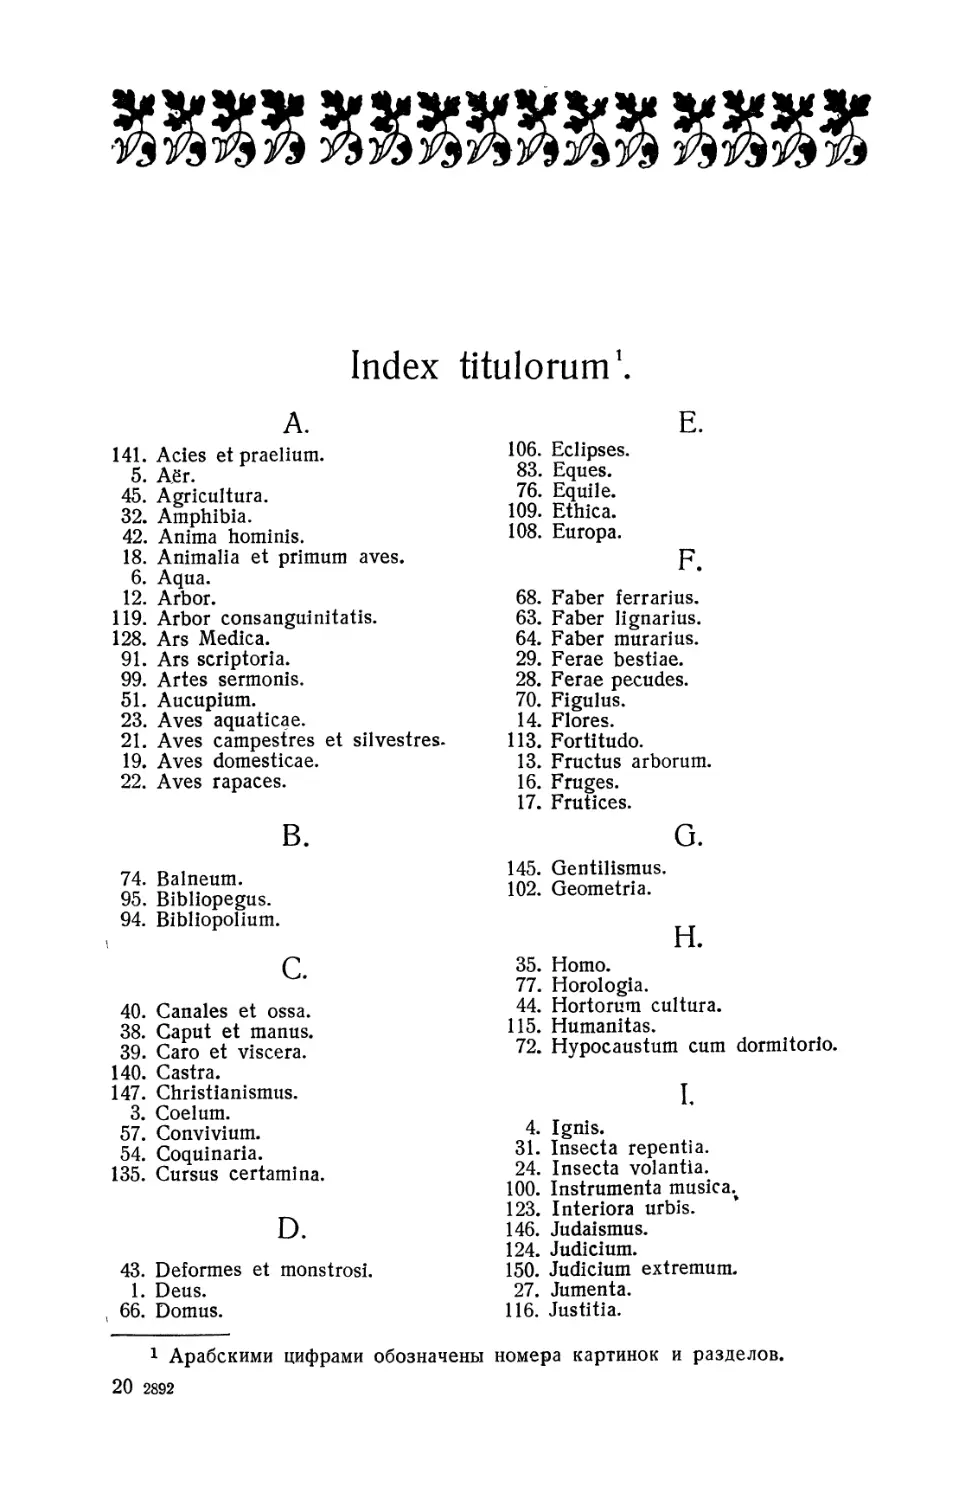 Index titulorum